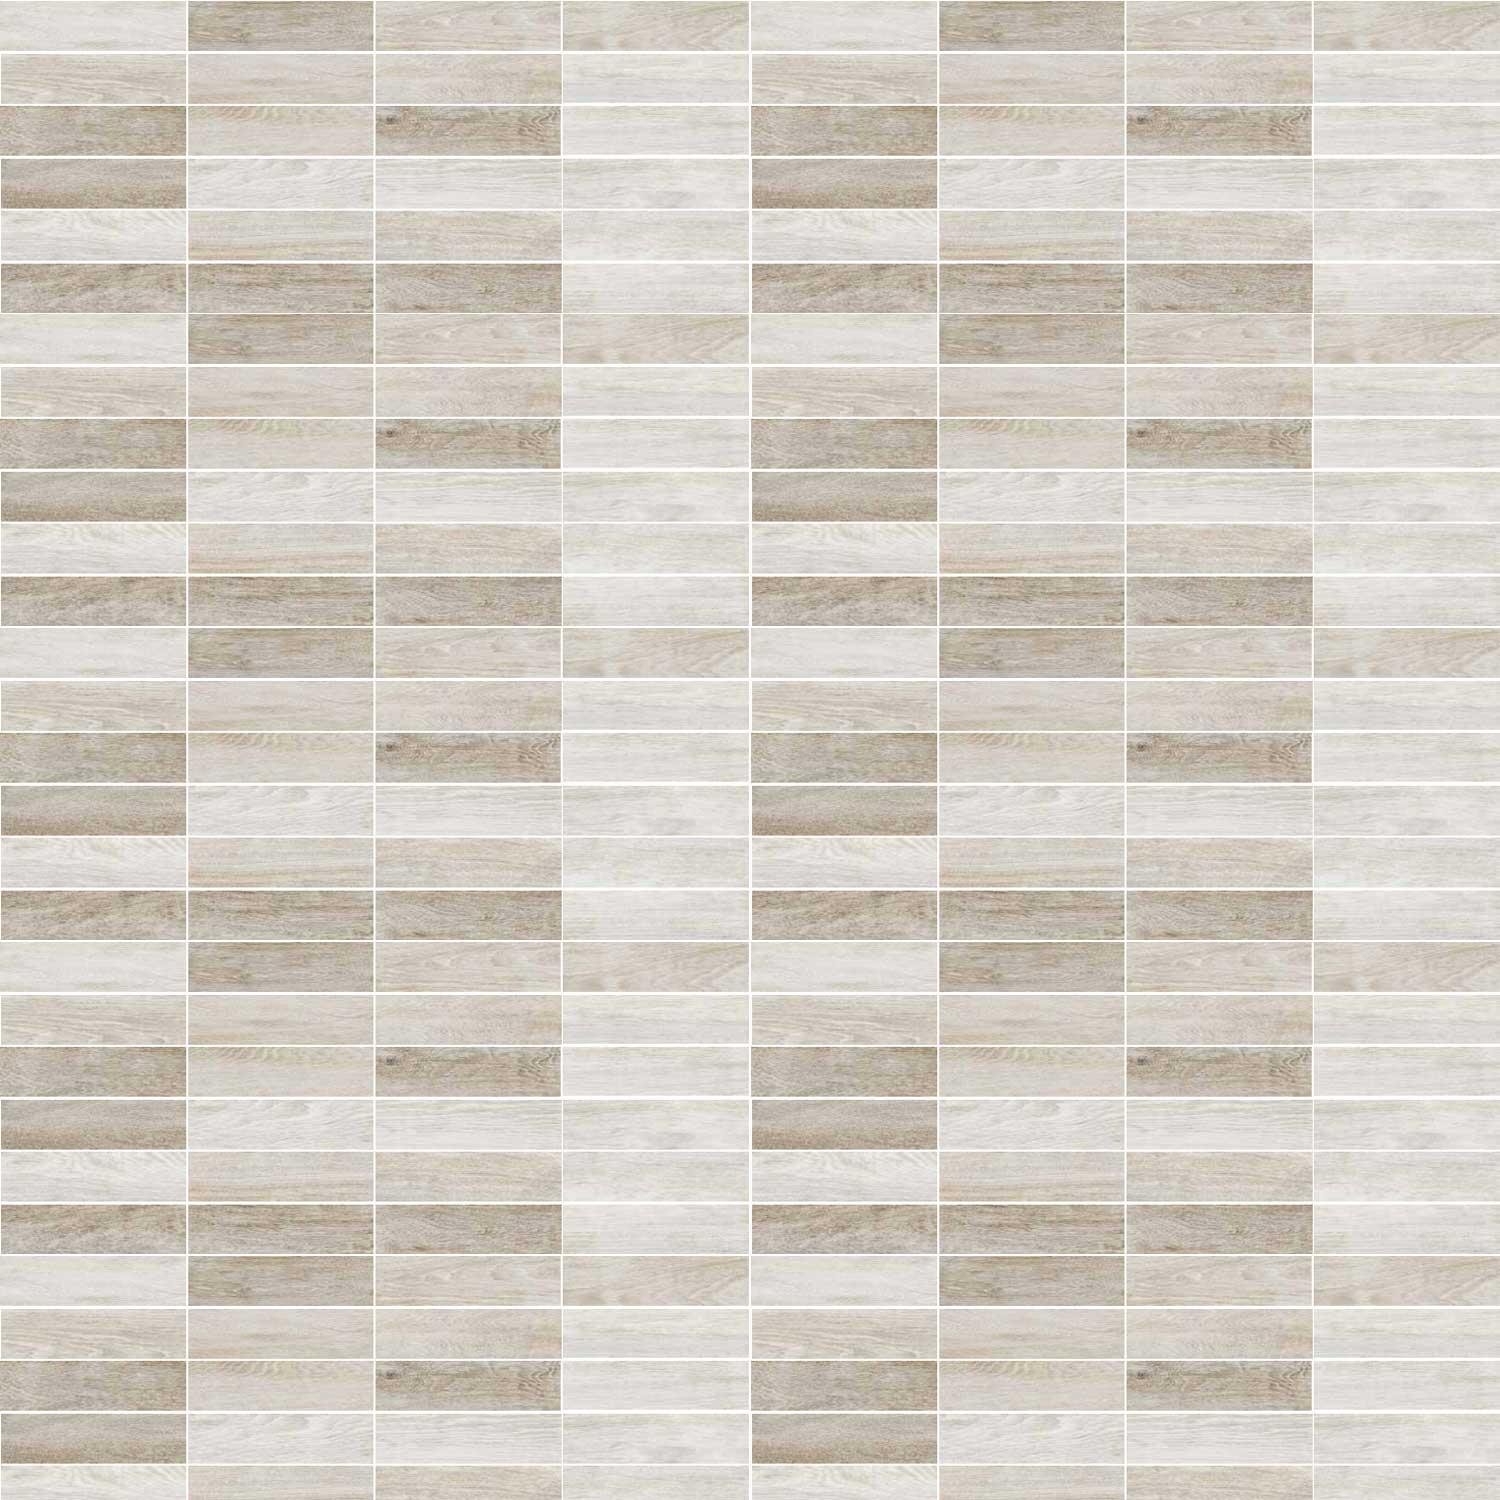 Parquet White Porcelain Plank Tile Wood Effect Walls floor 280 x 70mm